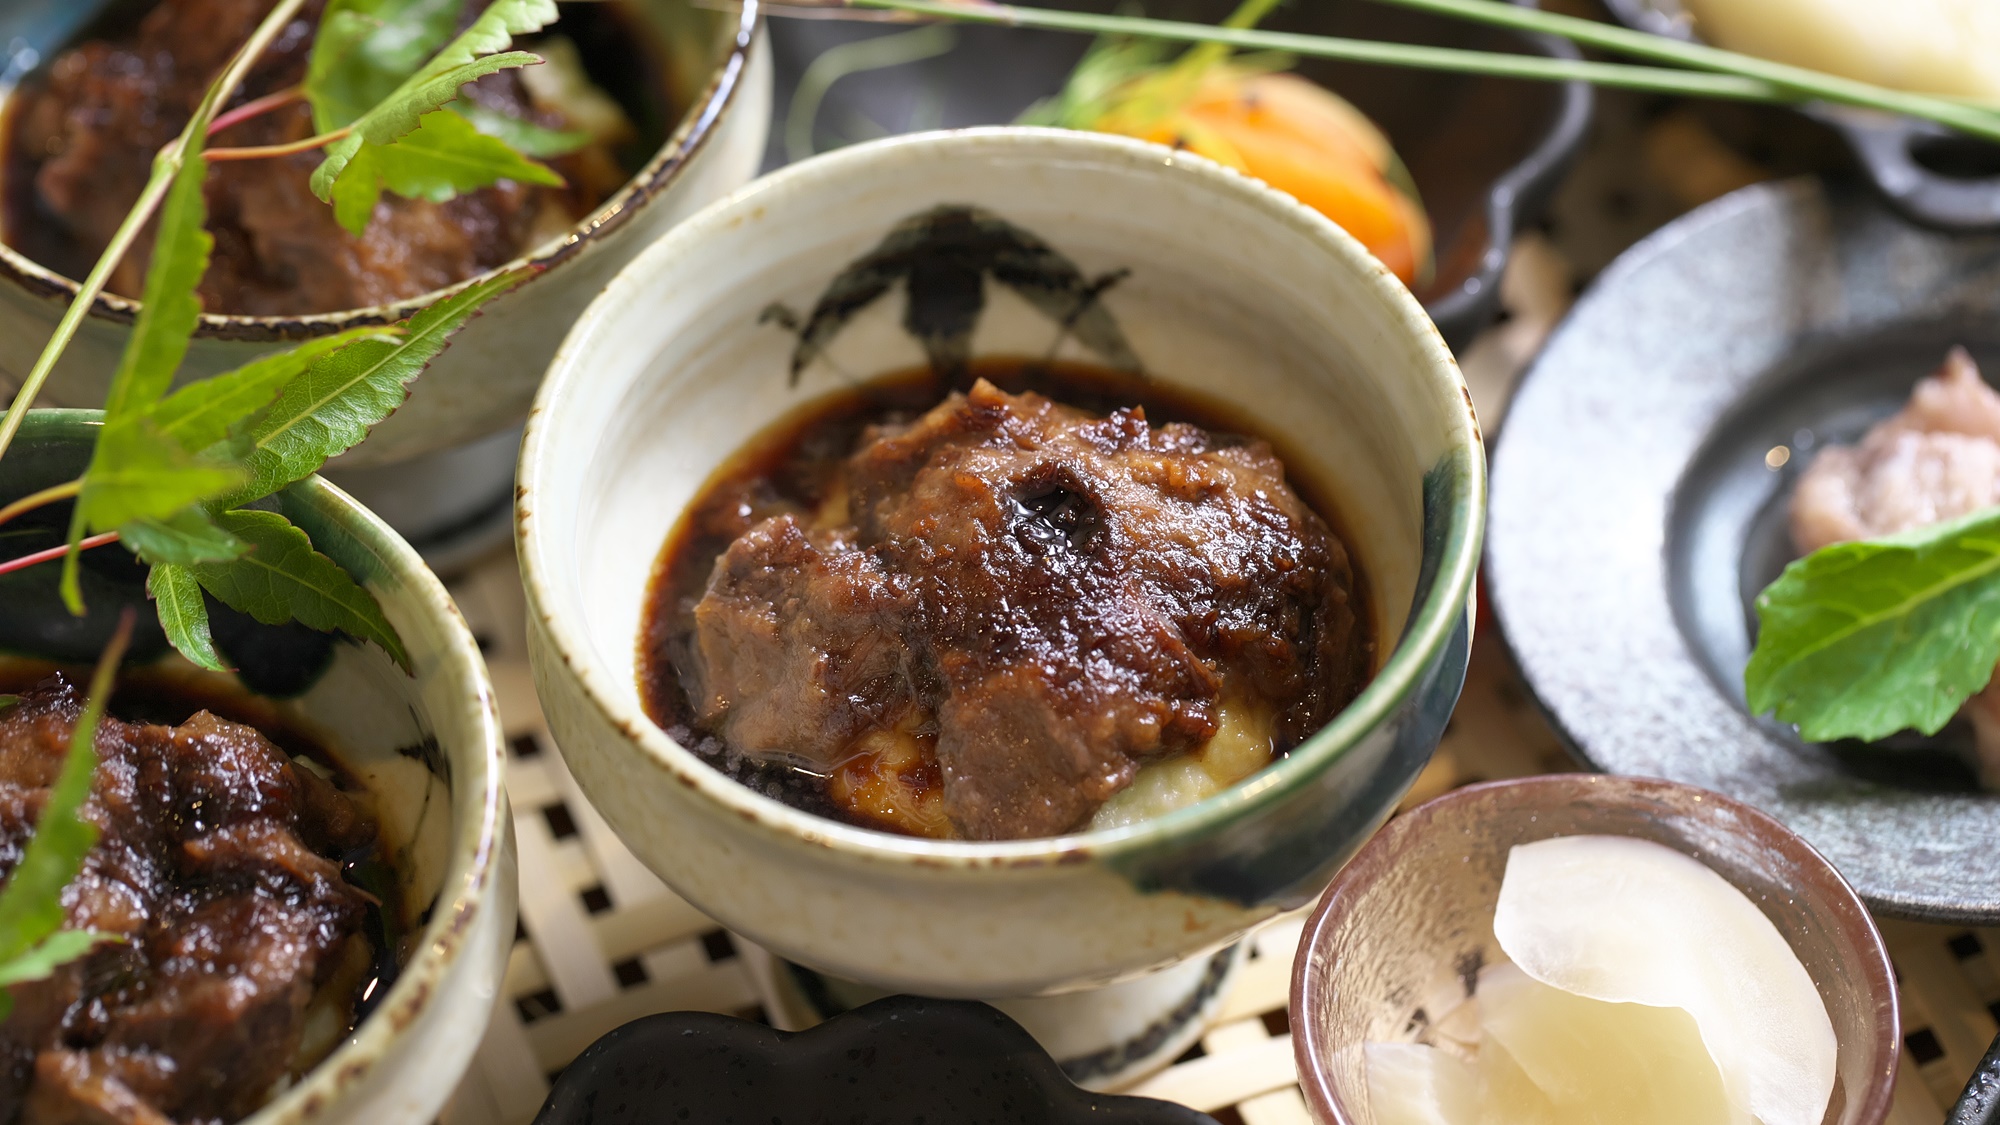 【夕食一例】国産牛頬山梨ワイン甲州味噌煮込み。国産牛頬肉のぷるんとした食感が贅沢な一品です。